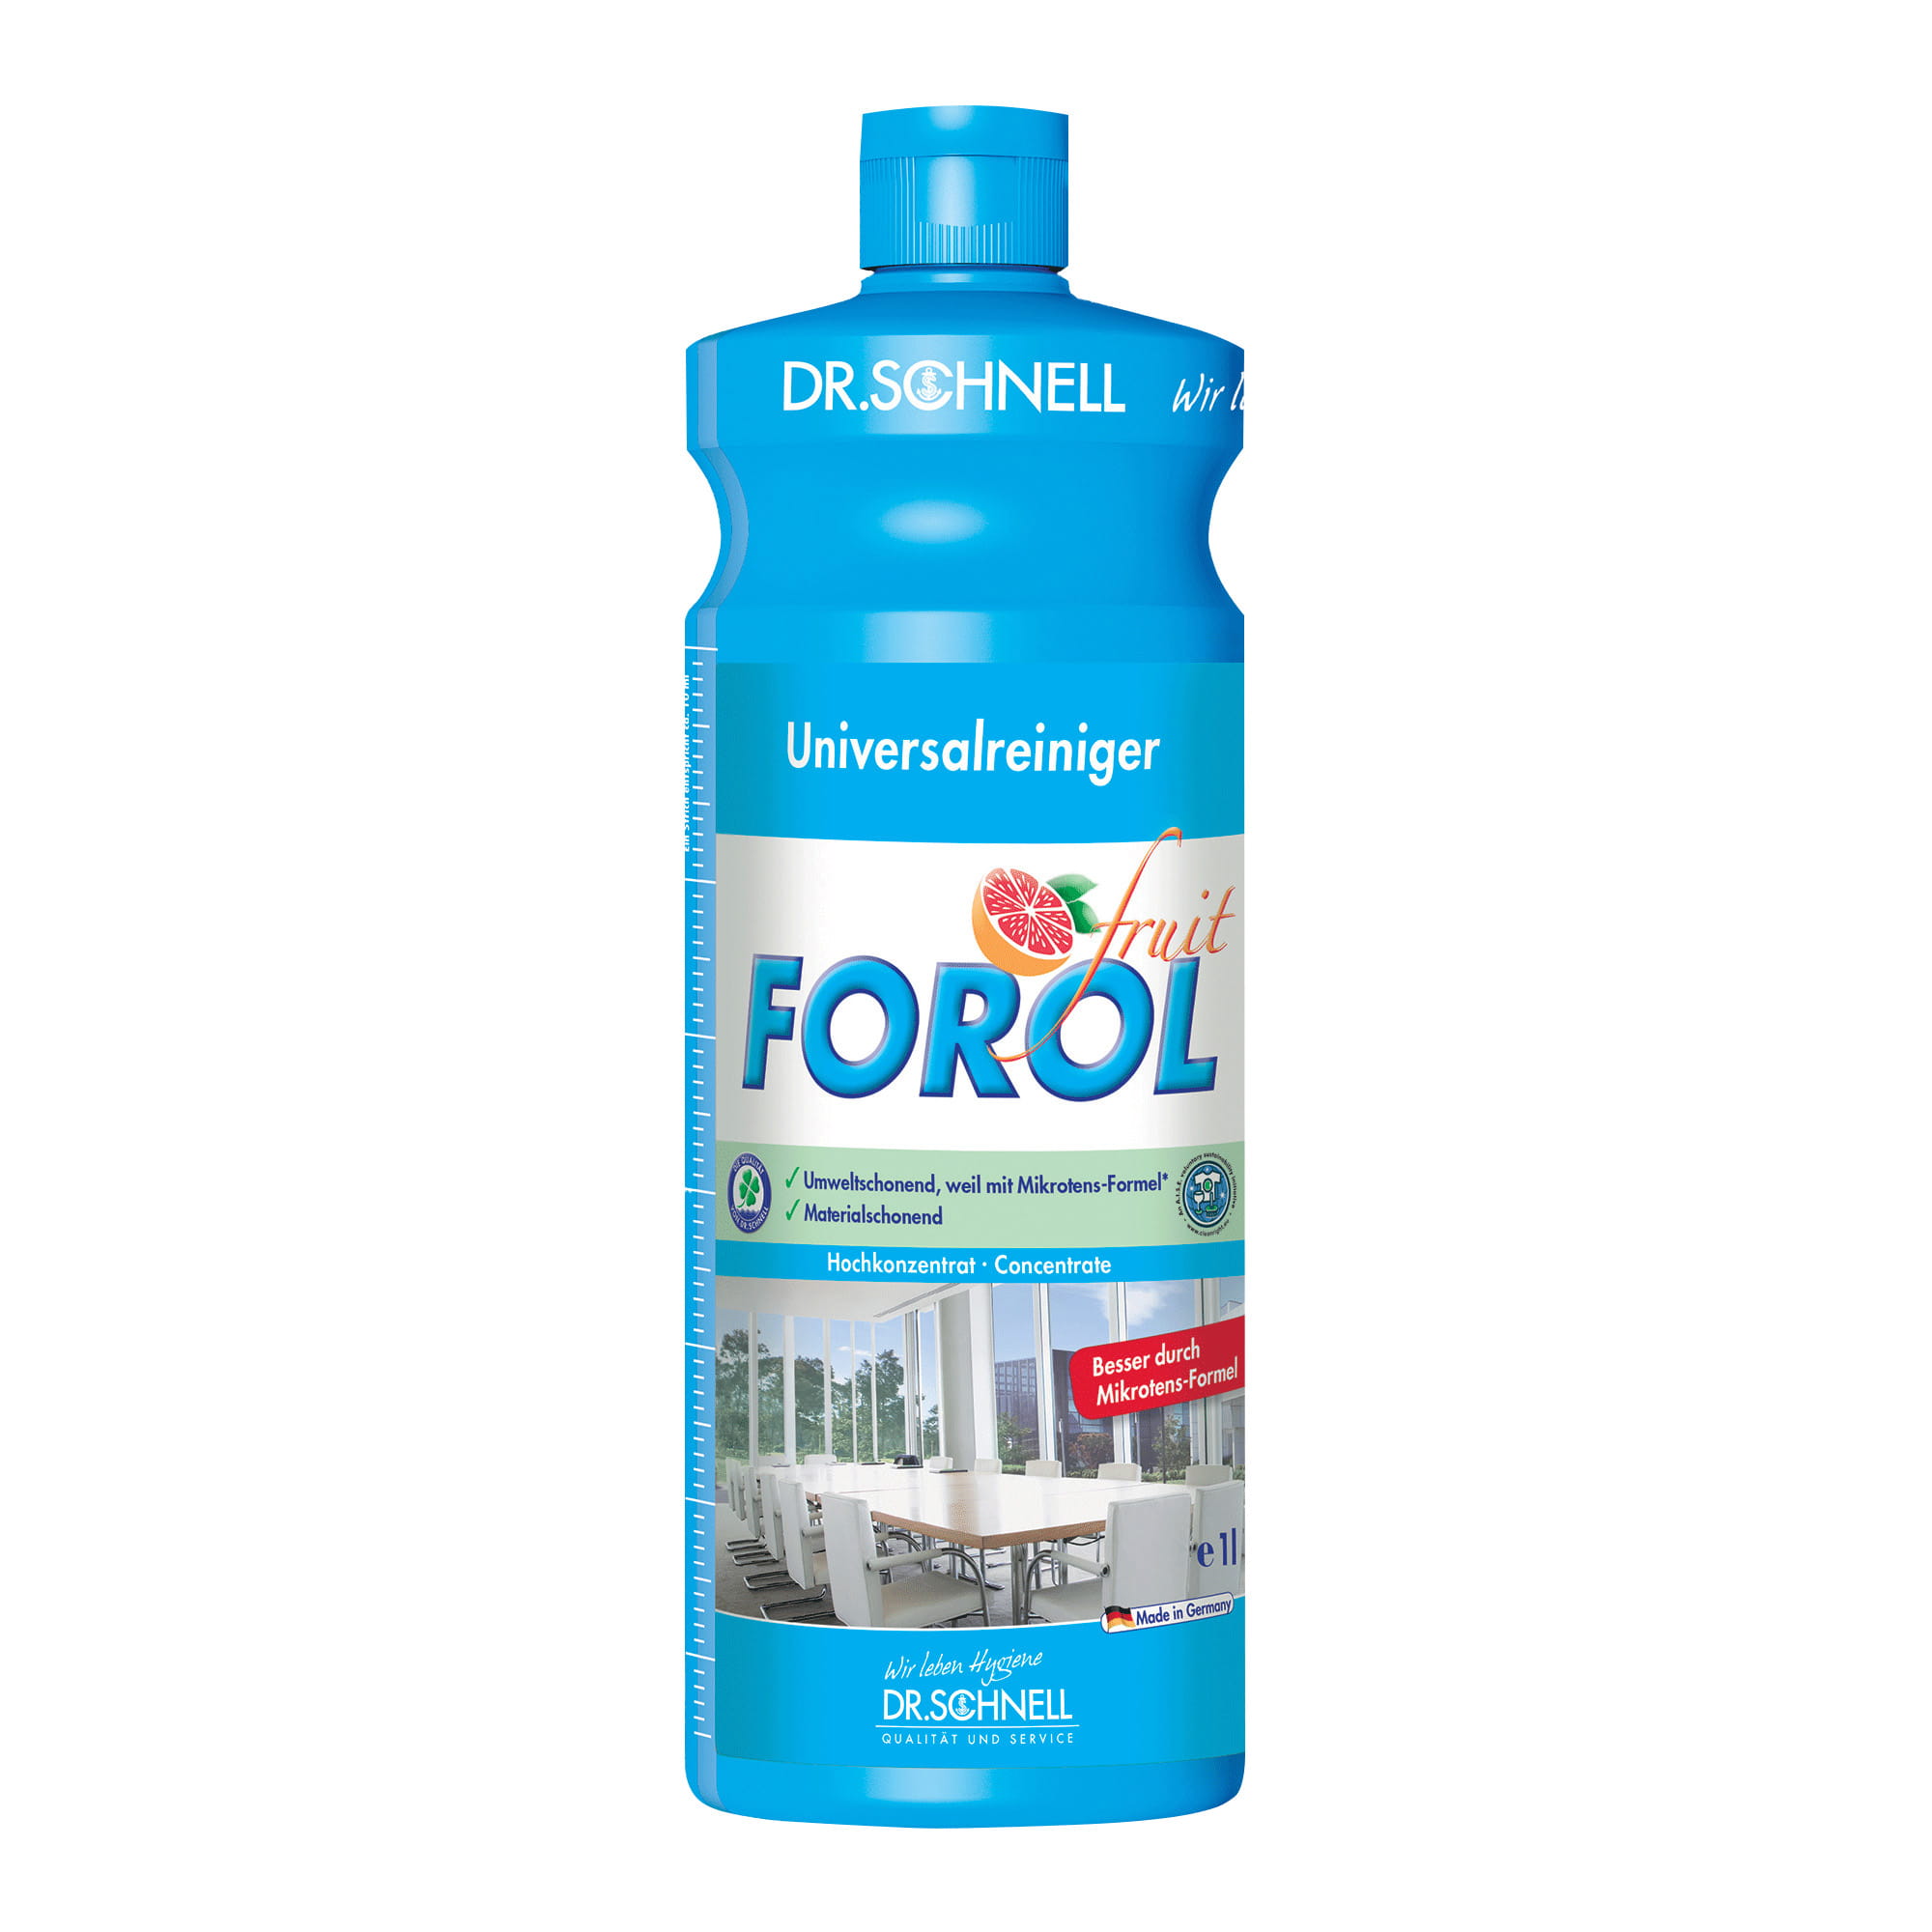 Dr. Schnell Forol Fruit Universalreiniger 1 Liter Flasche 00515_1